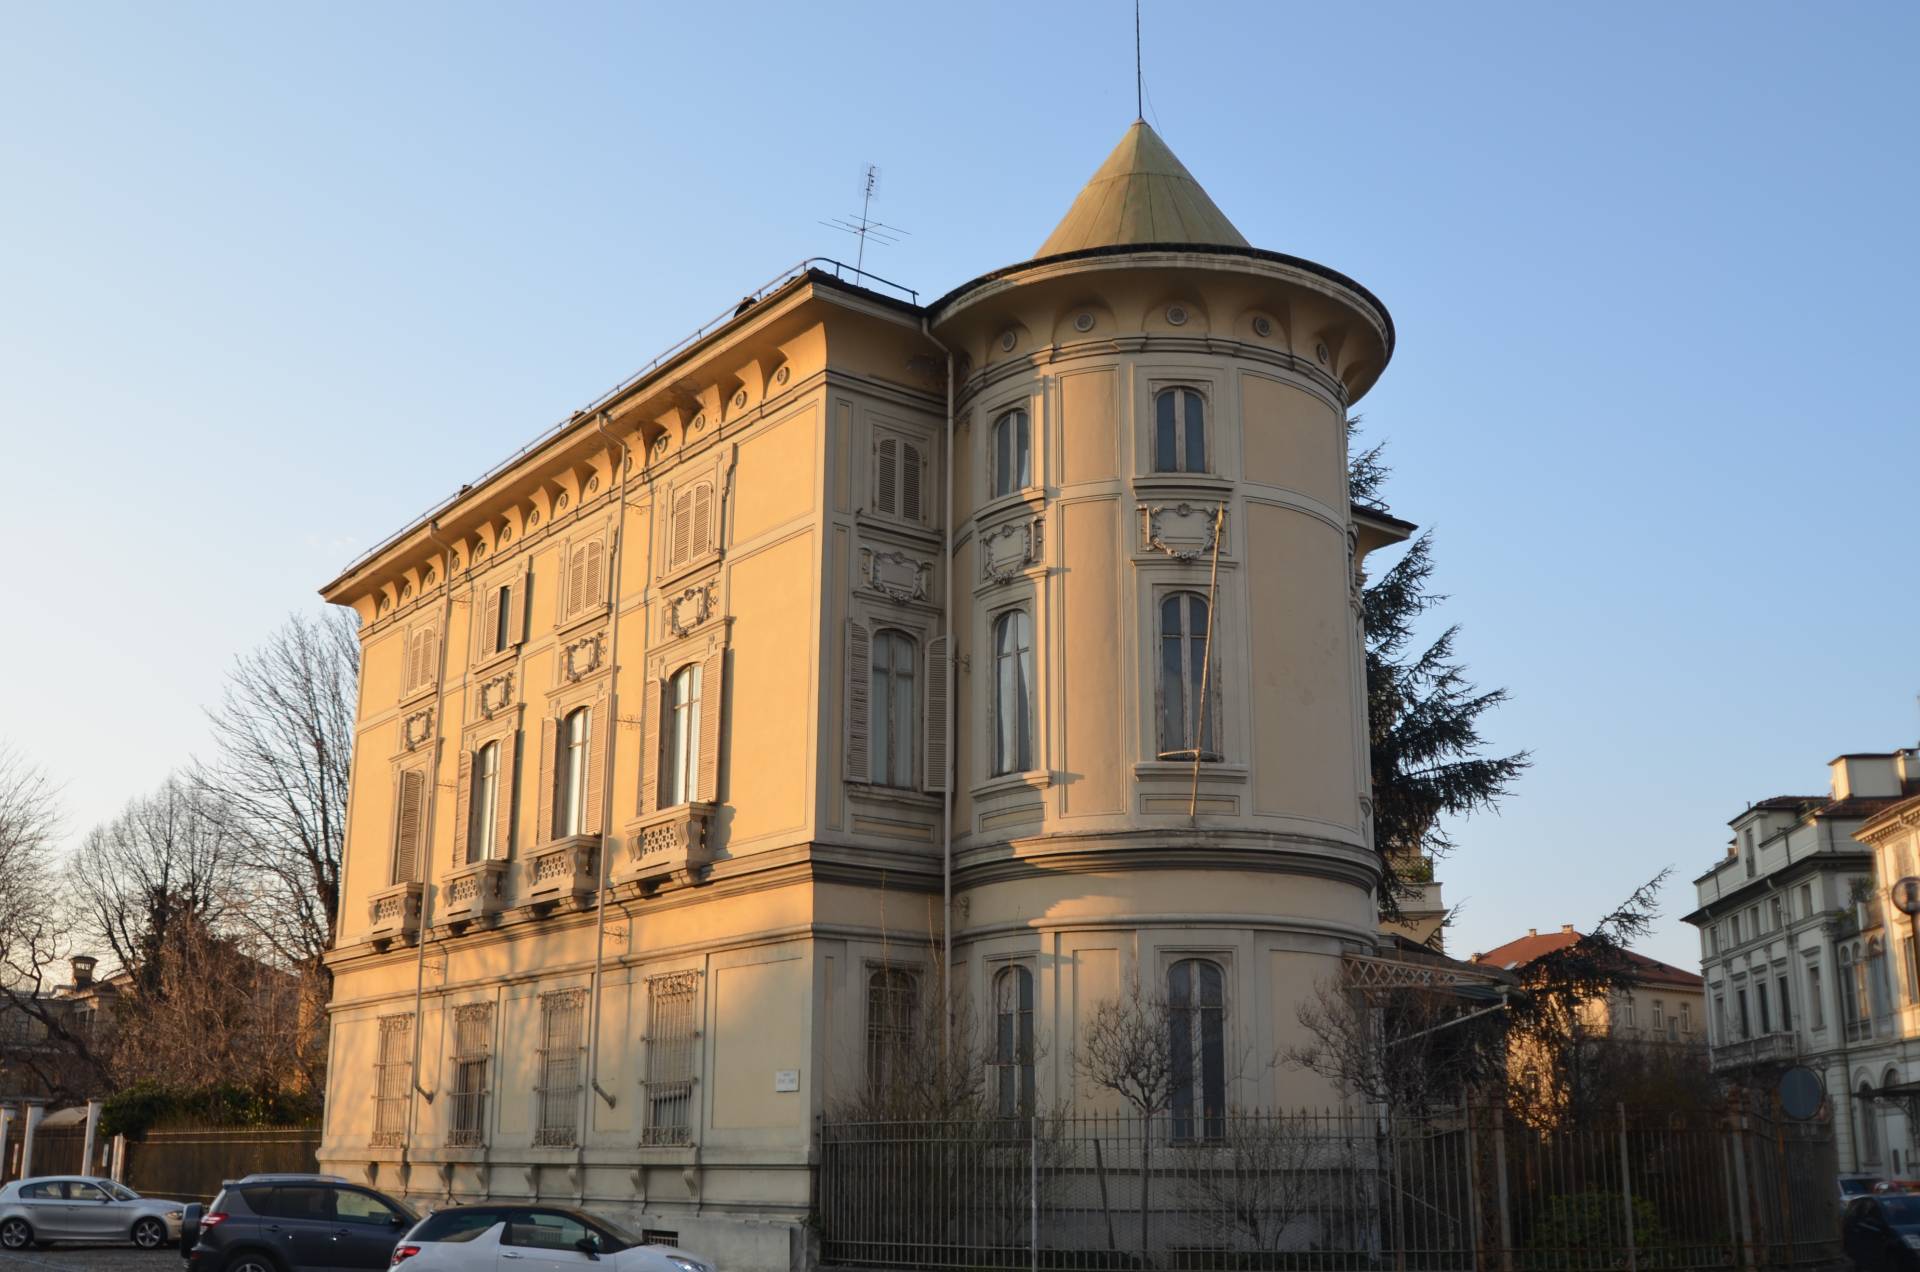 Stabile - Palazzo in Affitto a Torino